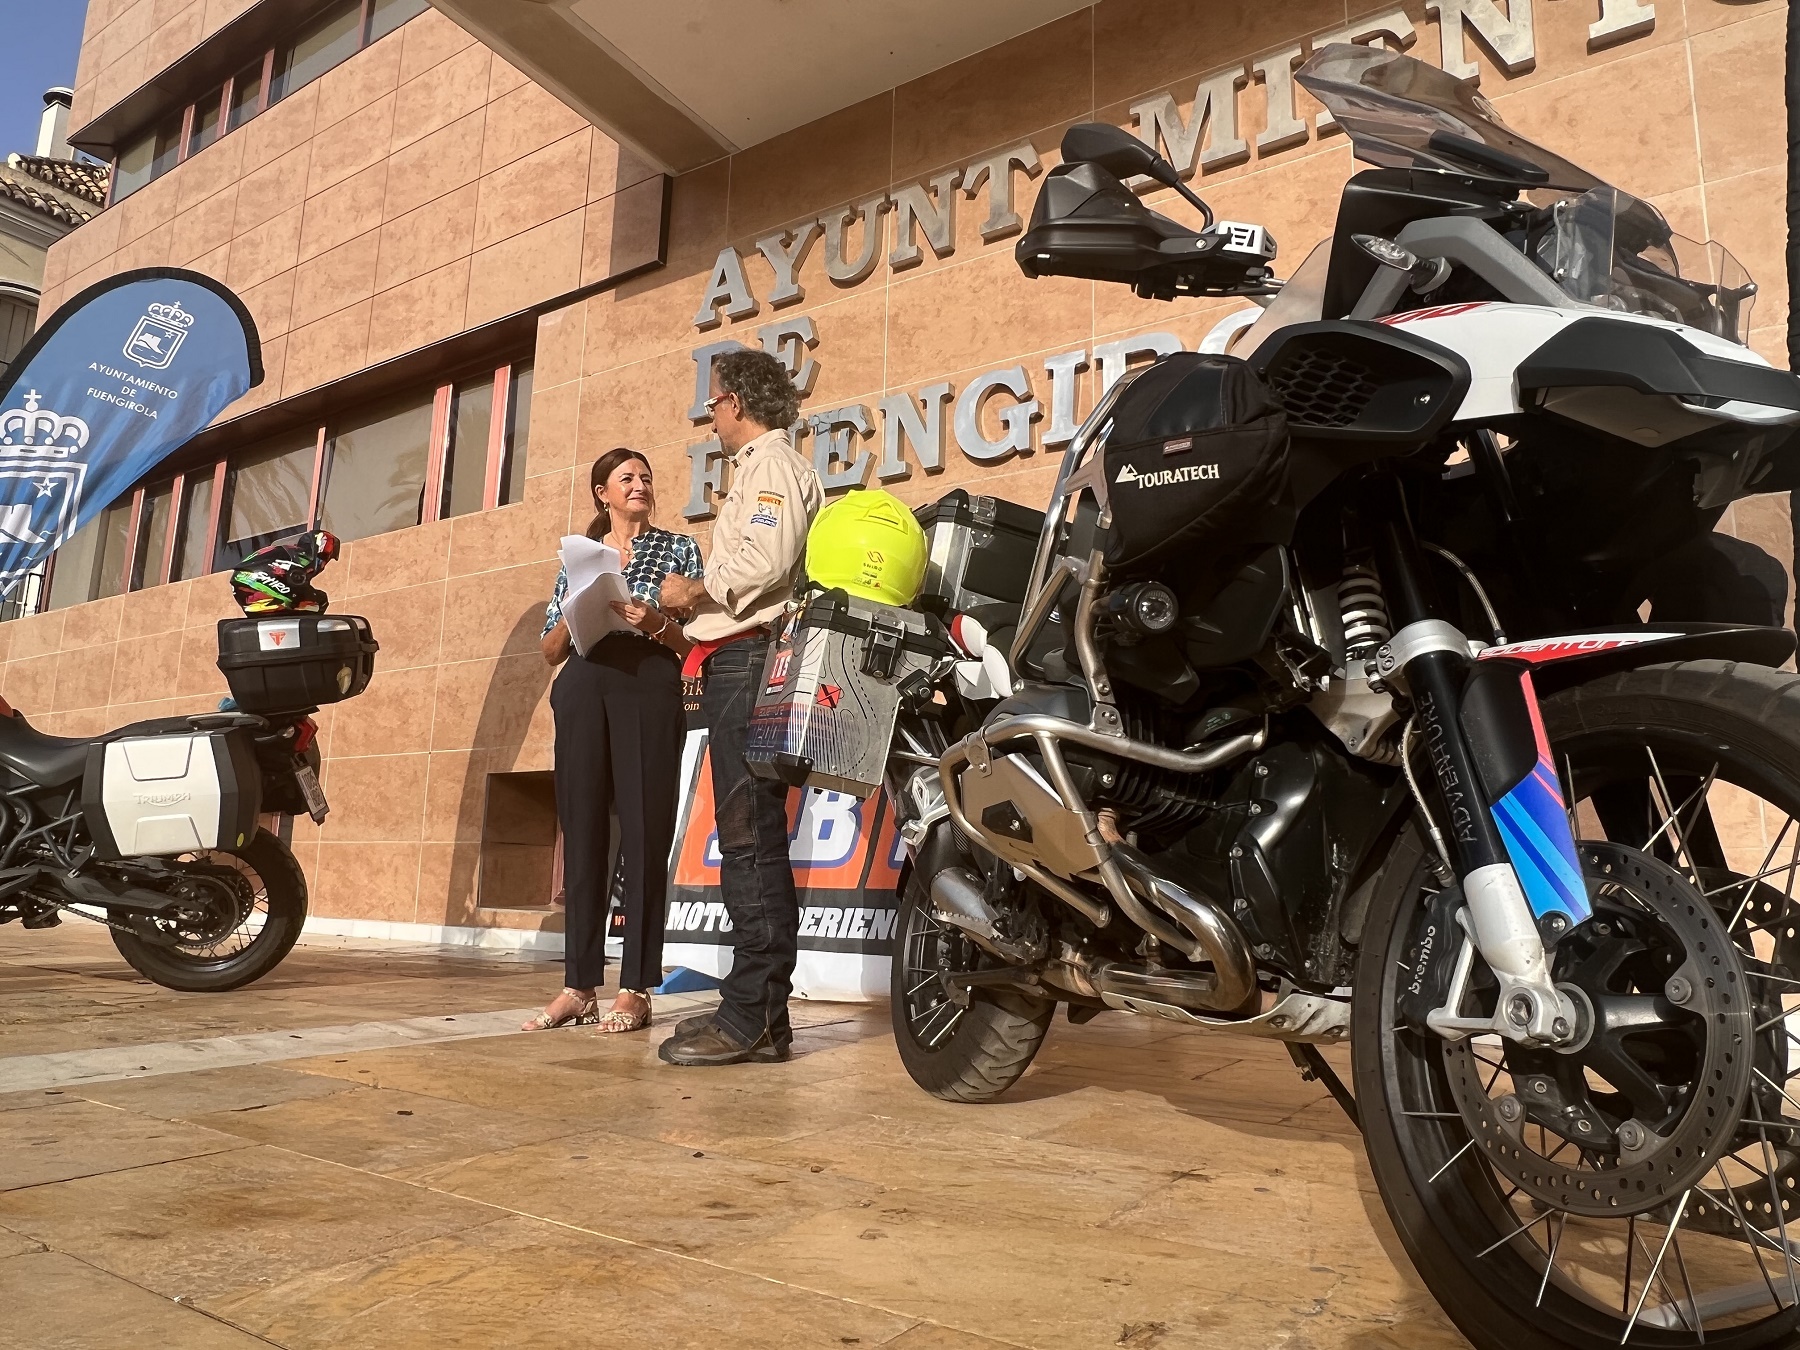 desconocido tono morir Fuengirola Challenge´ congregará a más de 250 motociclistas de todo el país  para participar en una concentración moto-turística - Fuengirola